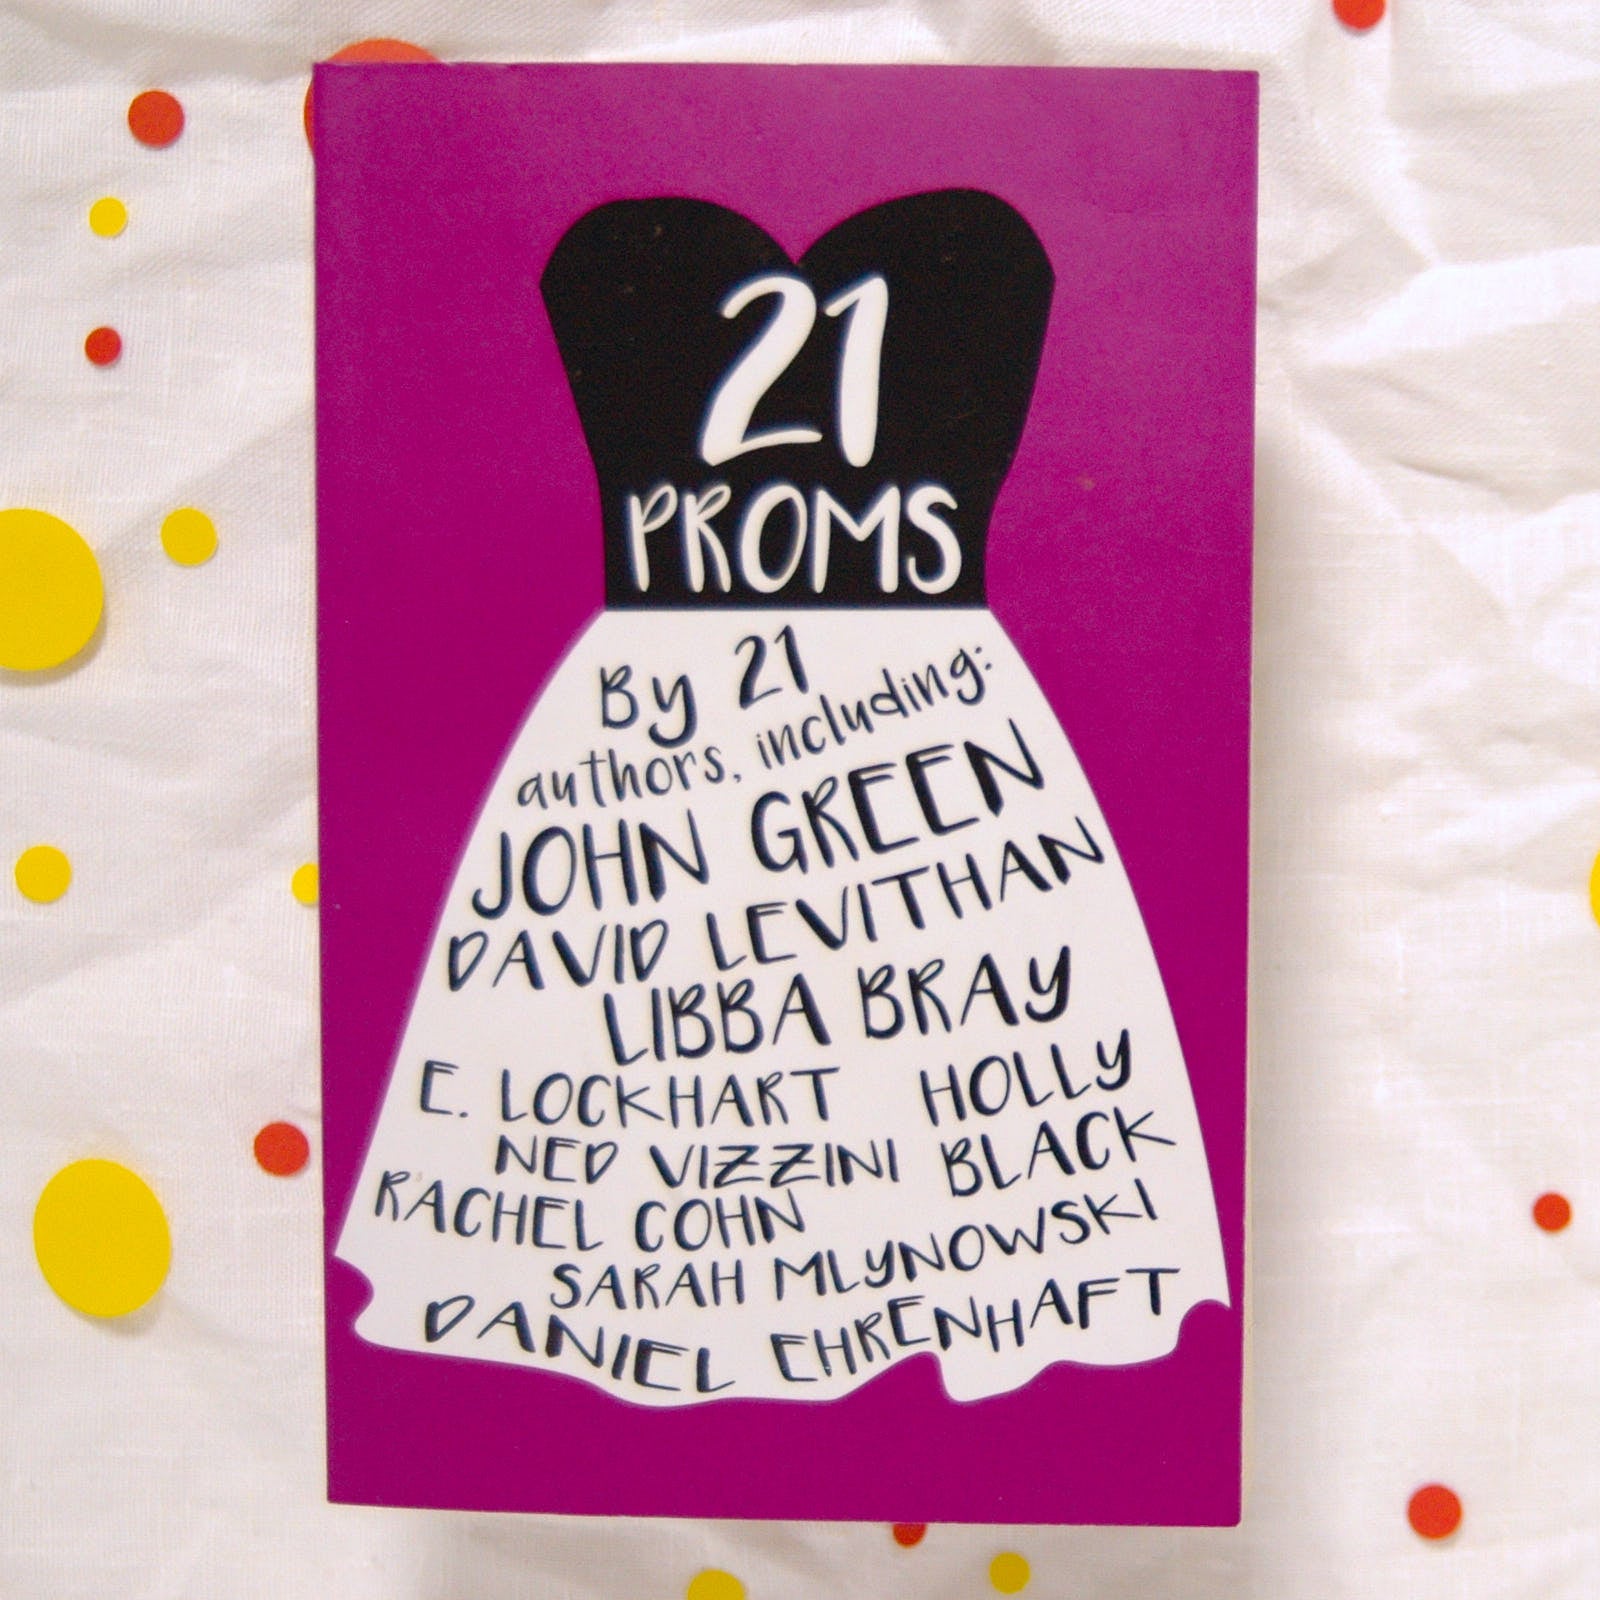 21 Proms av John Green, David Leviathan, Libba Bray m.fl.